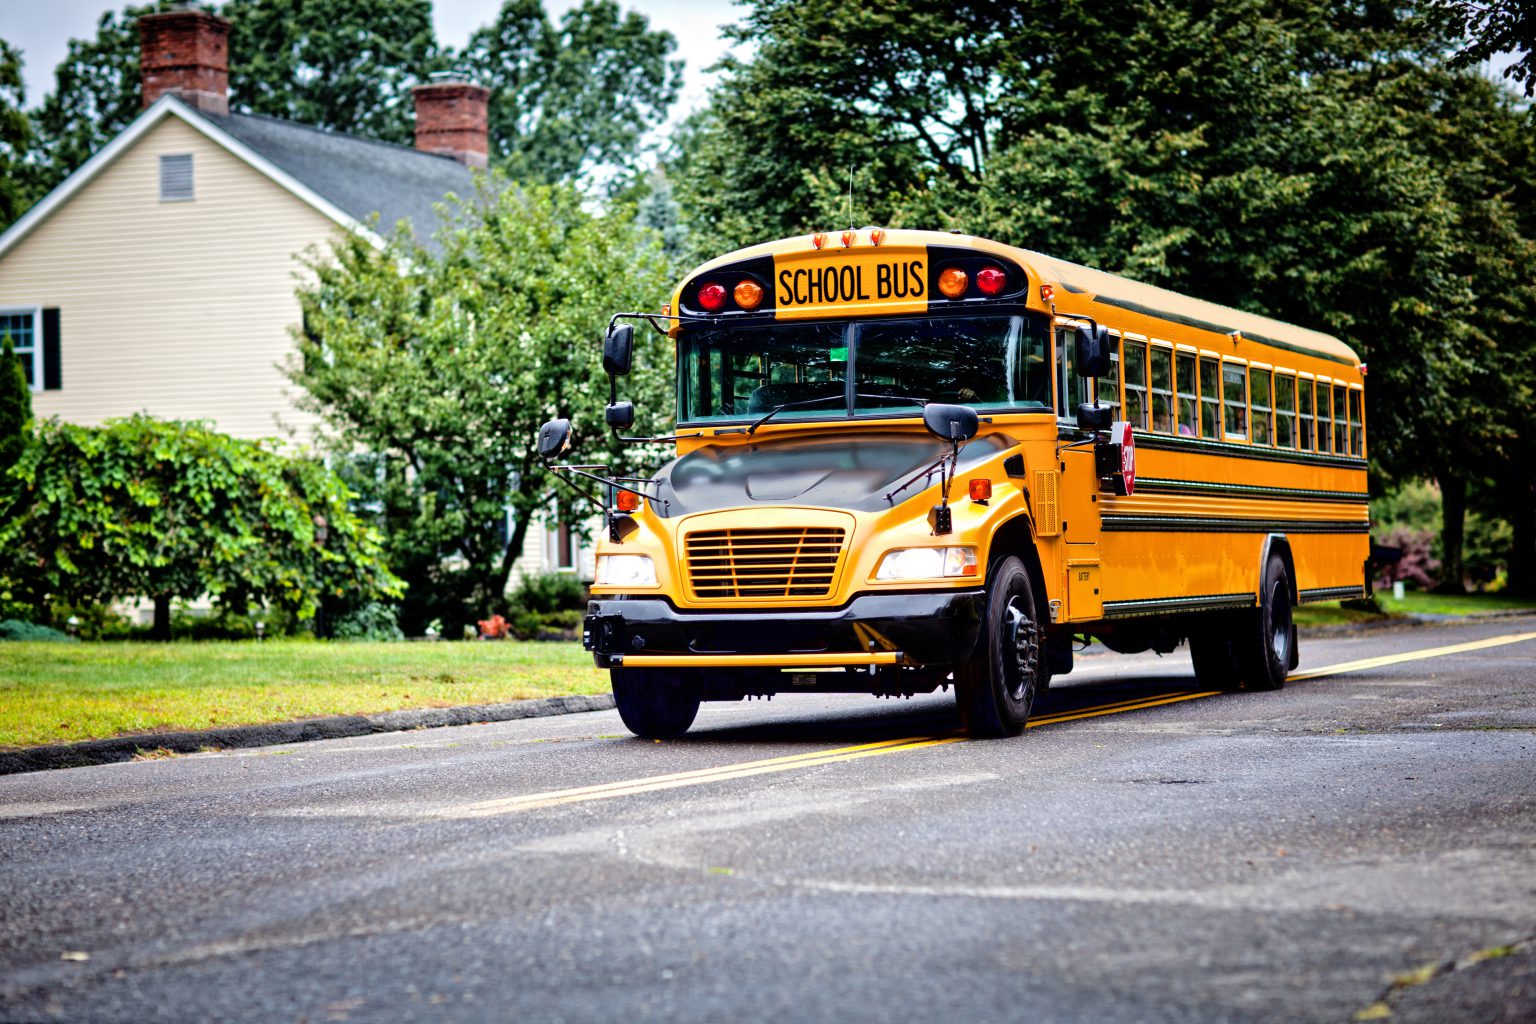 school bus shortage in ct